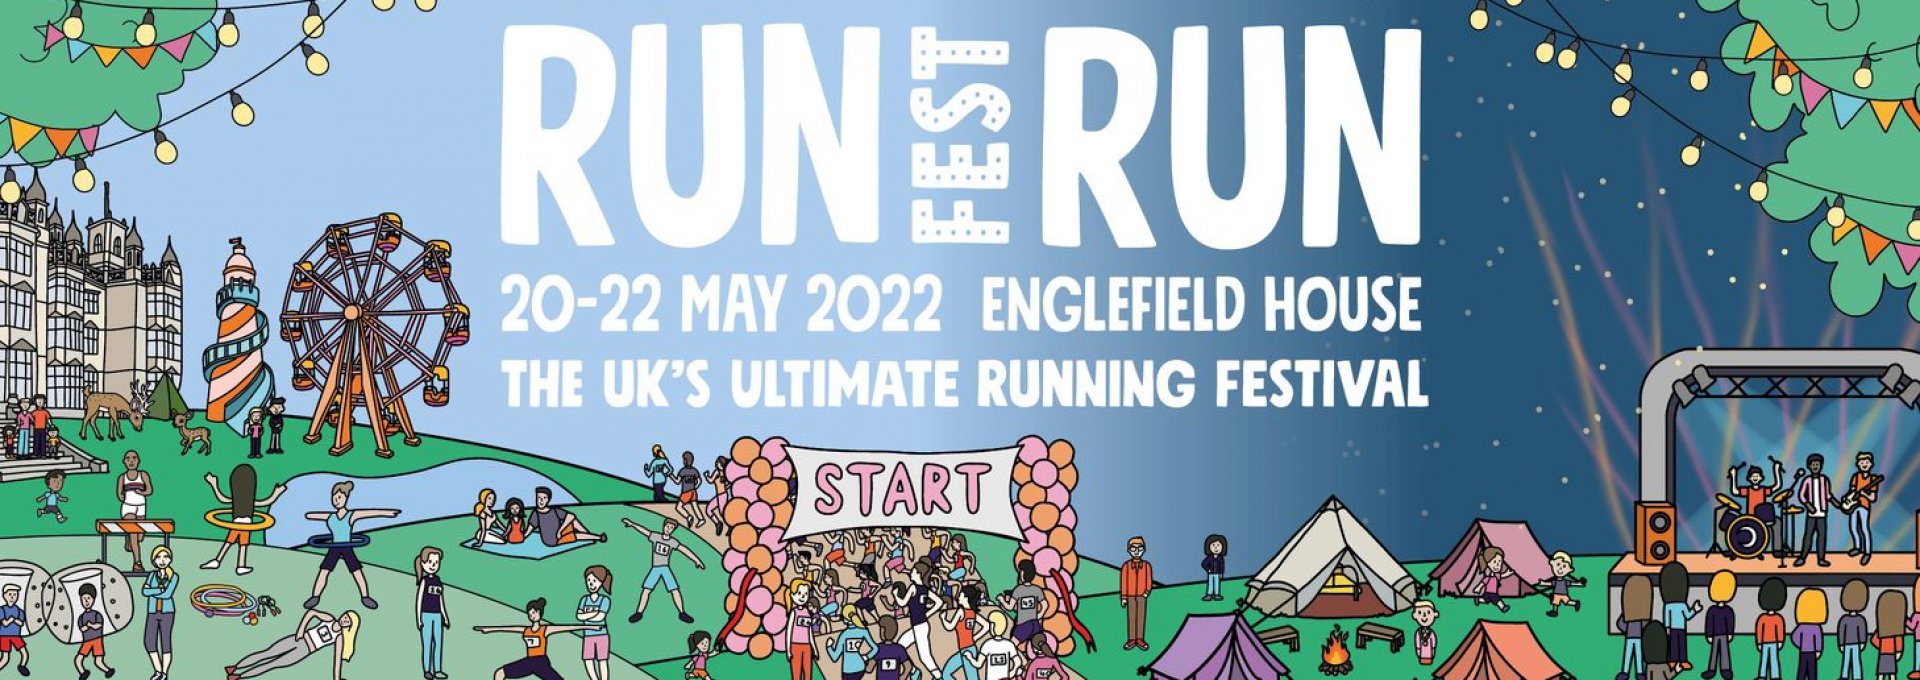 Runfest Run 2022